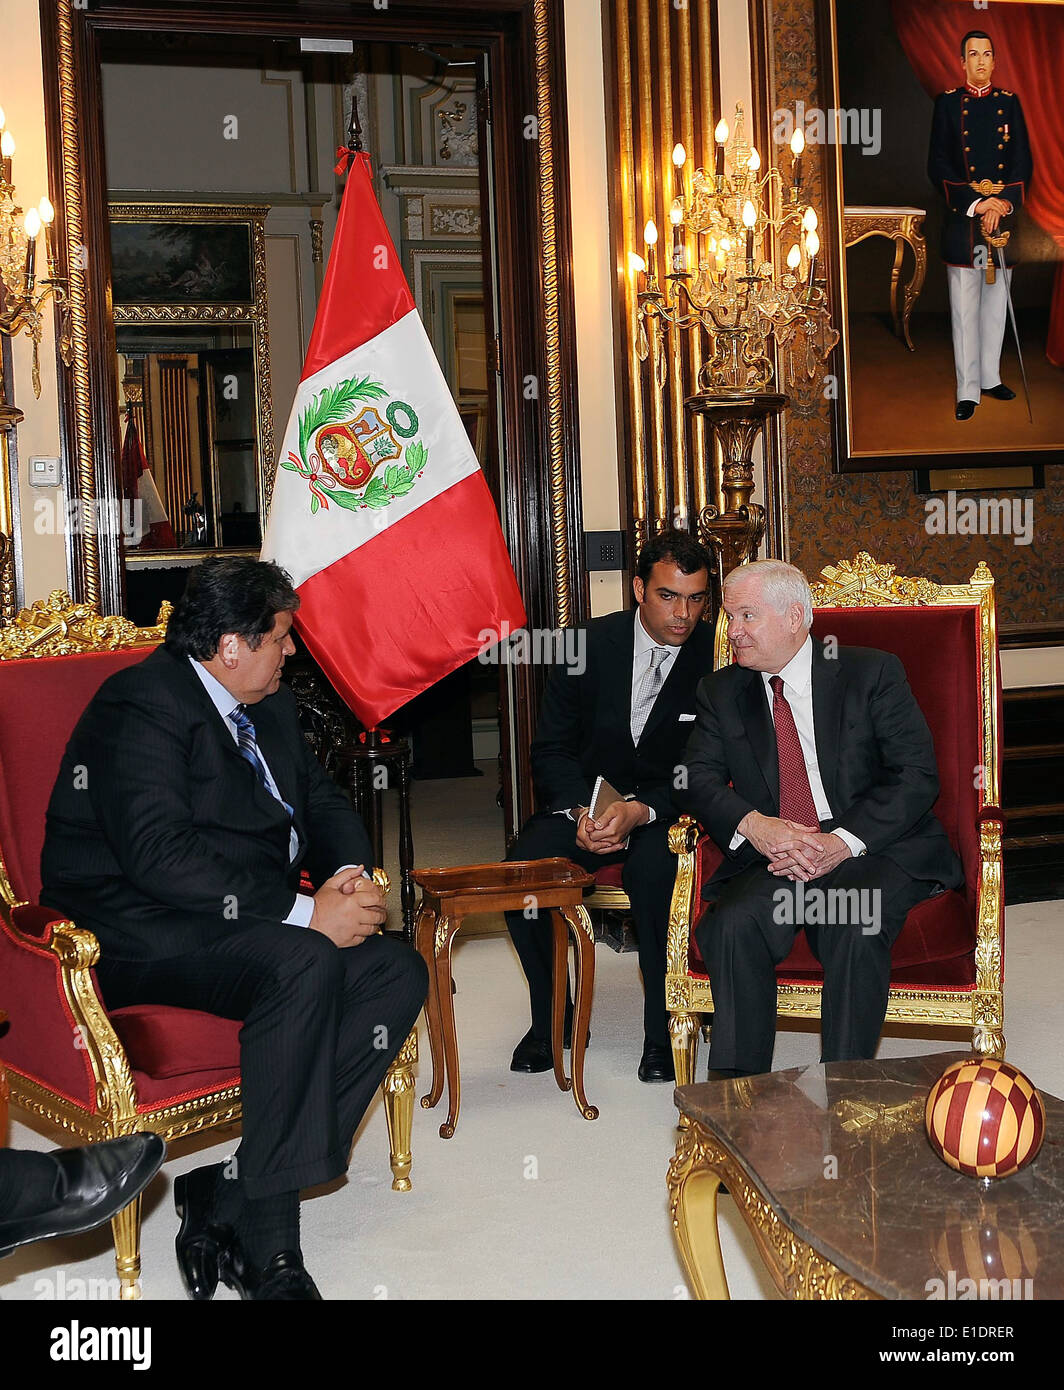 El secretario de Defensa Robert M. Gates y el presidente peruano Alan García celebrar una reunión en el palacio presidencial de Miraflores en Lima, Perú Foto de stock